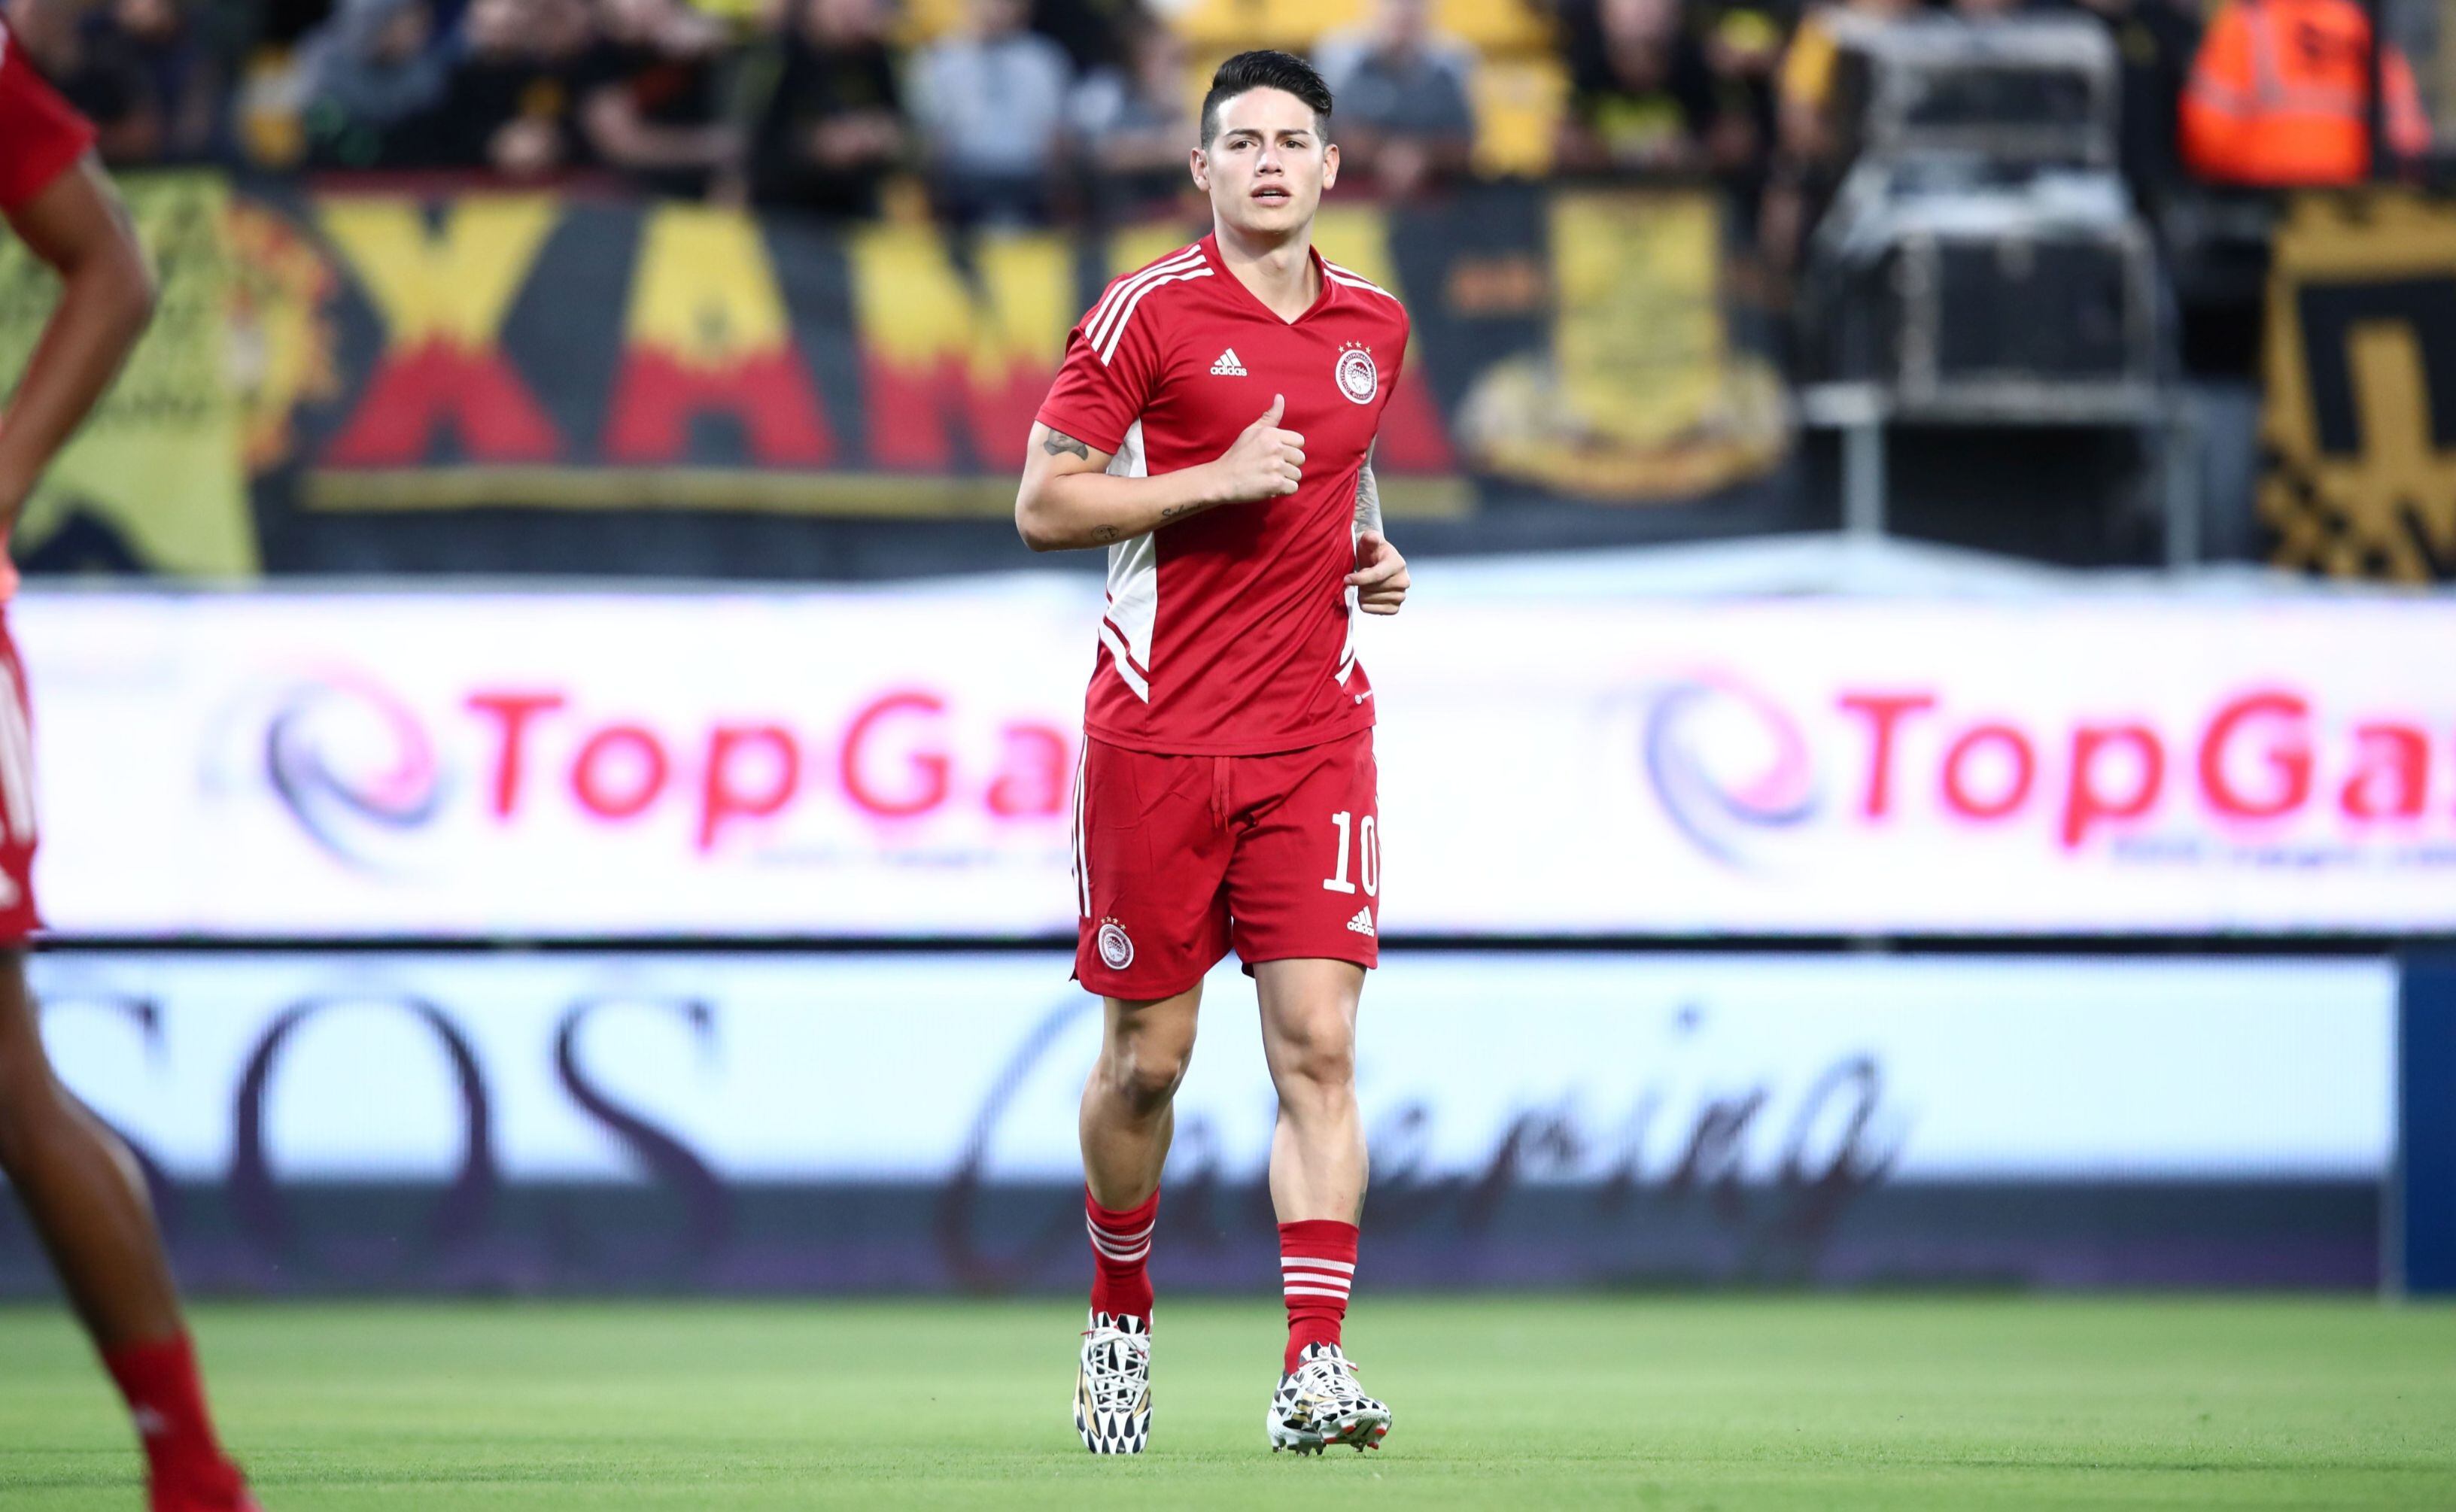 Olympiacos pierde 2-1 en el primer partido de James Rodríguez como títular en el fútbol de Grecia